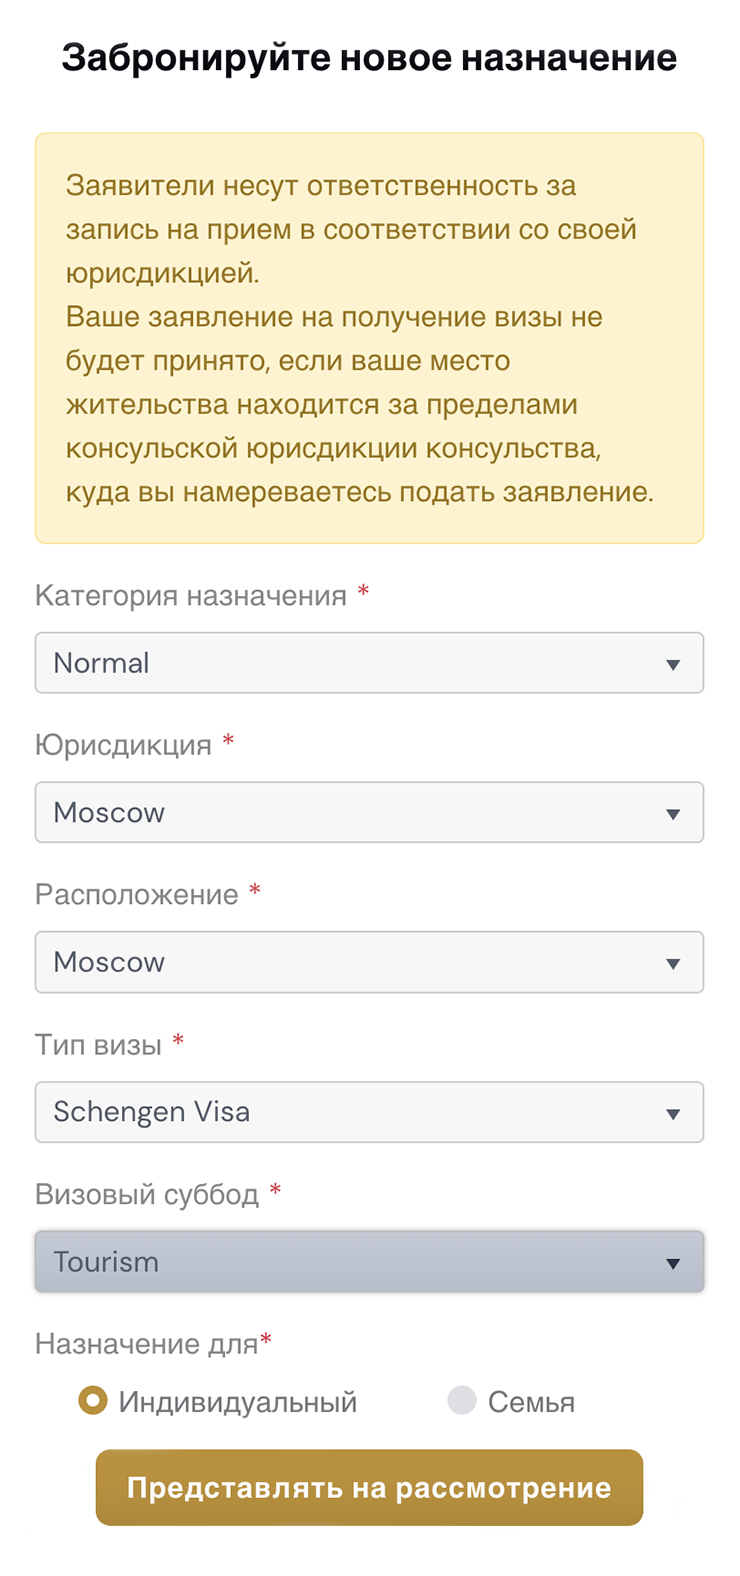 На некоторых этапах будет интуитивно понятно, что нужно выбрать из выпадающих списков, даже если перевод на сайте выполнен с ошибками. Например, «Визовый суббод» — это Visa subtype, то есть подвид визы. Источник: russia.blsspainglobal.com